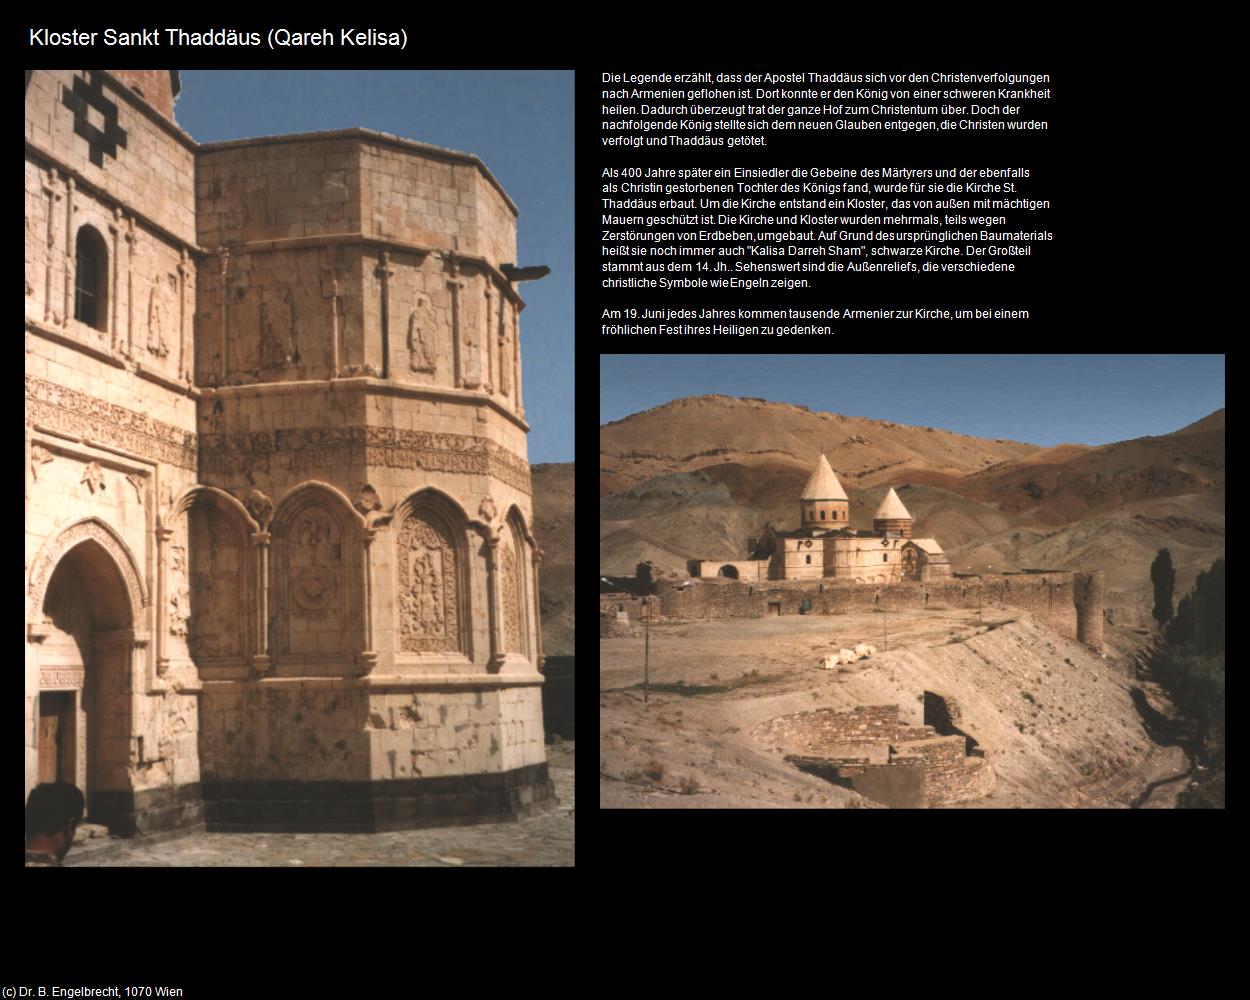 Kloster Sankt Thaddäus (Qareh Kelisa) in Iran